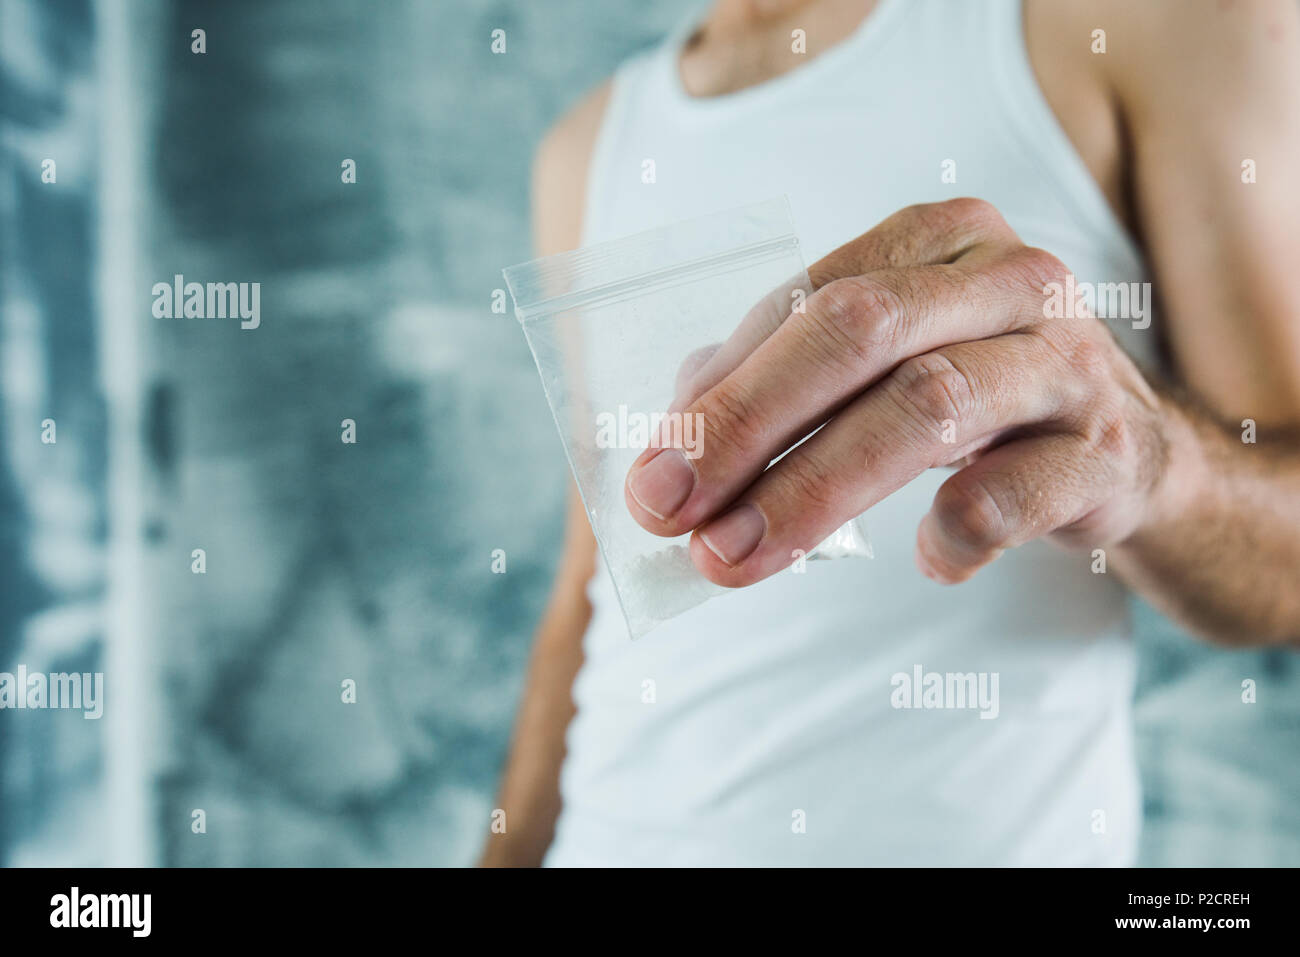 Membre de gangs et de drogues offrant du crack dans un petit sachet plastique, Close up of hands with selective focus Banque D'Images